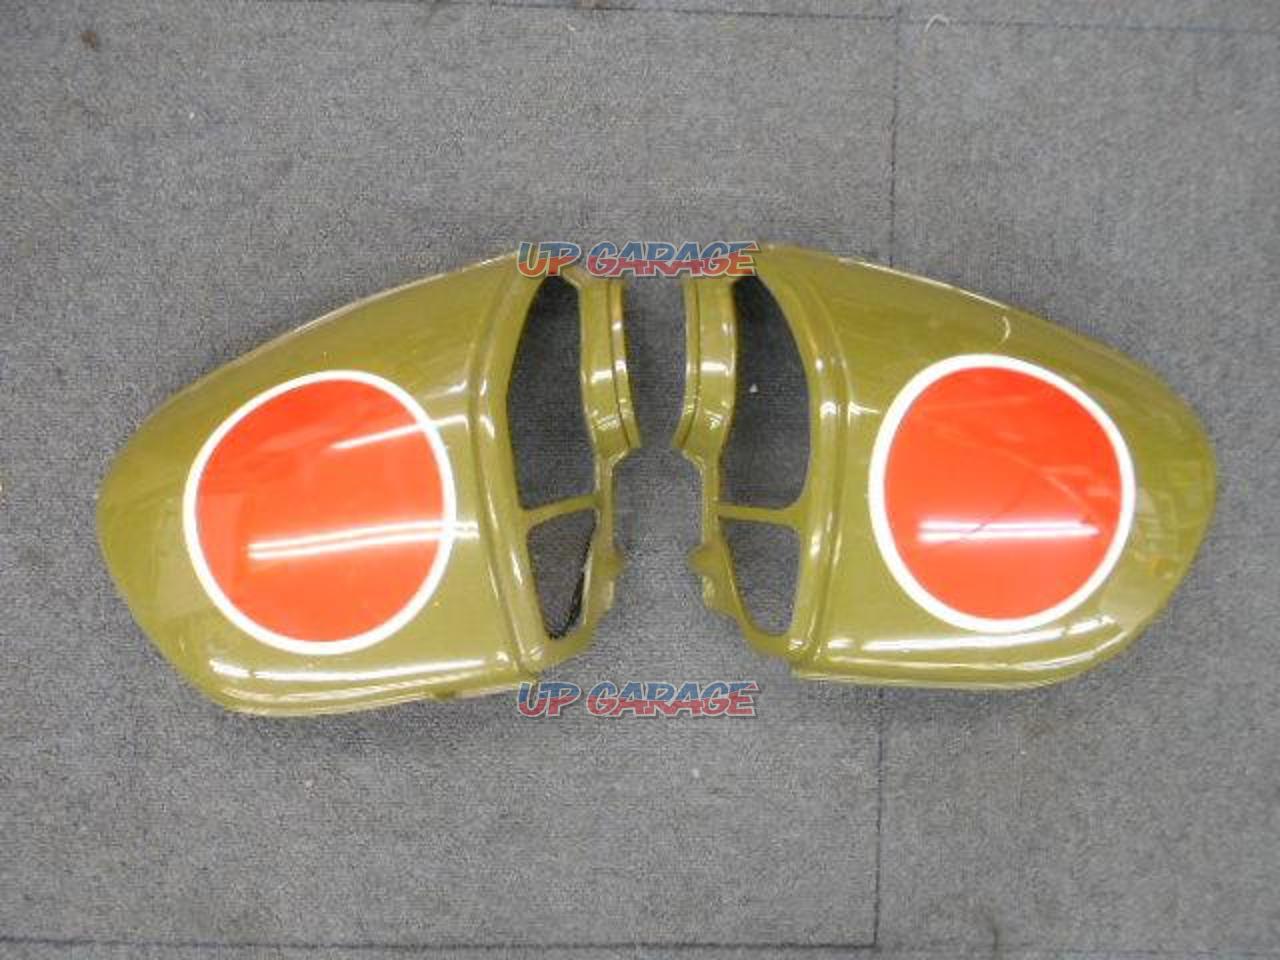 CB400T / CB250T] Honda Genuine Side Cover Set [Kettle Tank